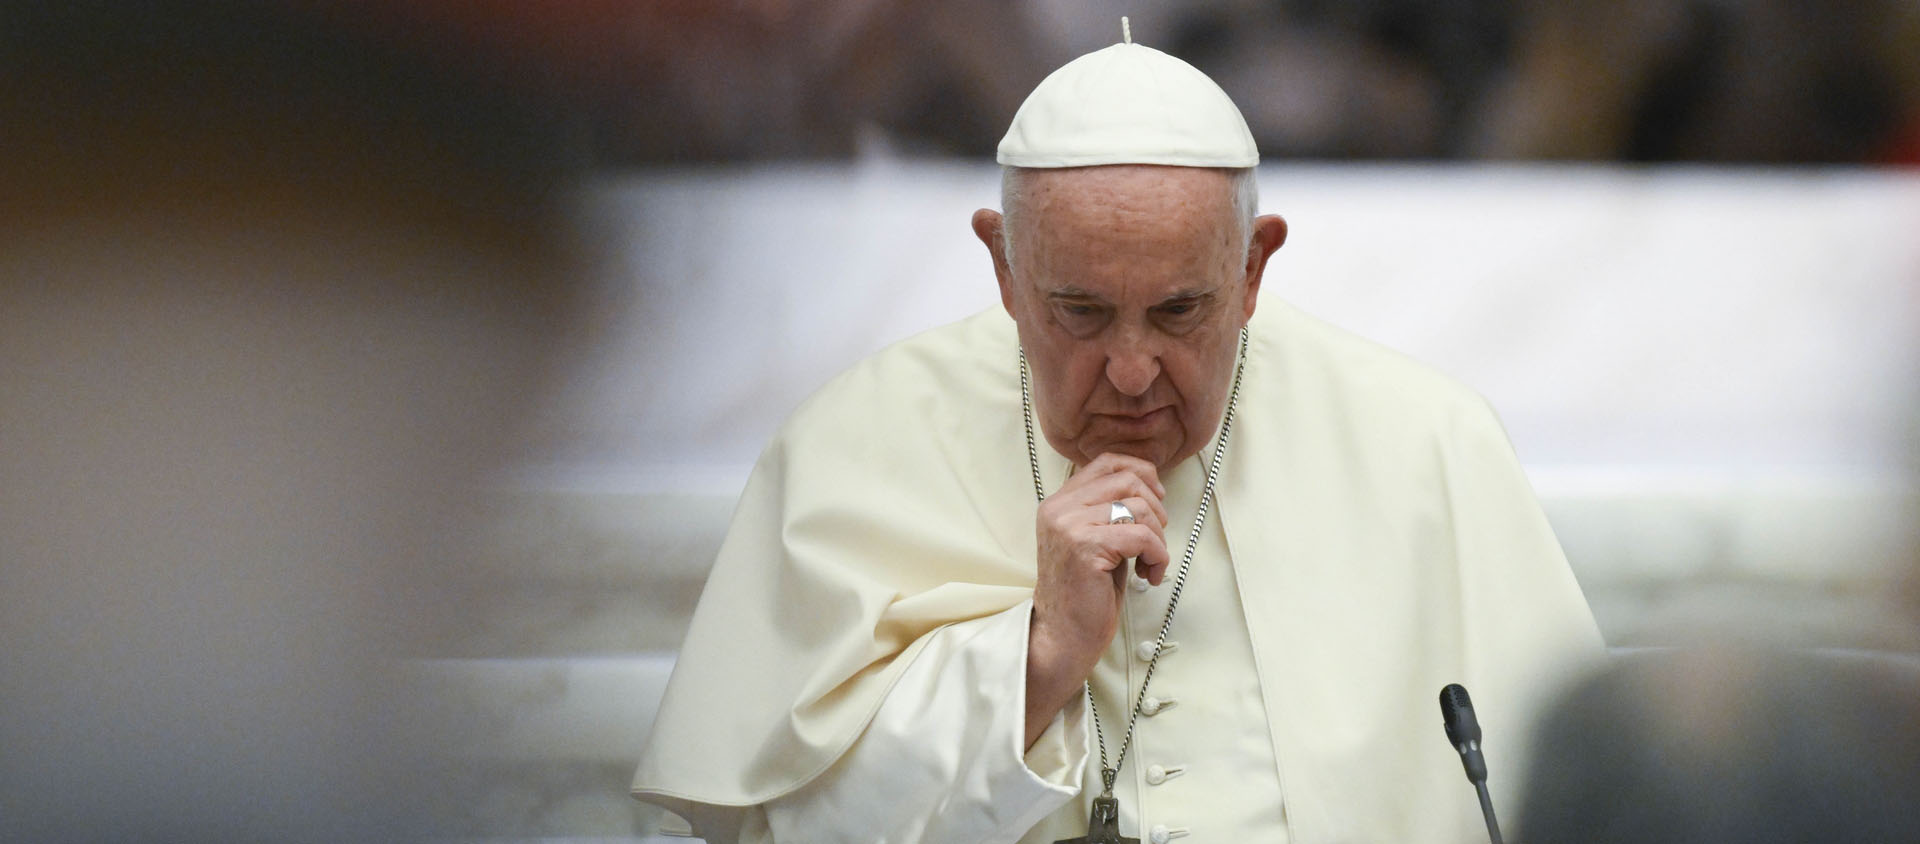 Le pape François aurait utilisé une expression italienne insultante pour désigner des personnes homosexuelles | © Vatican Media